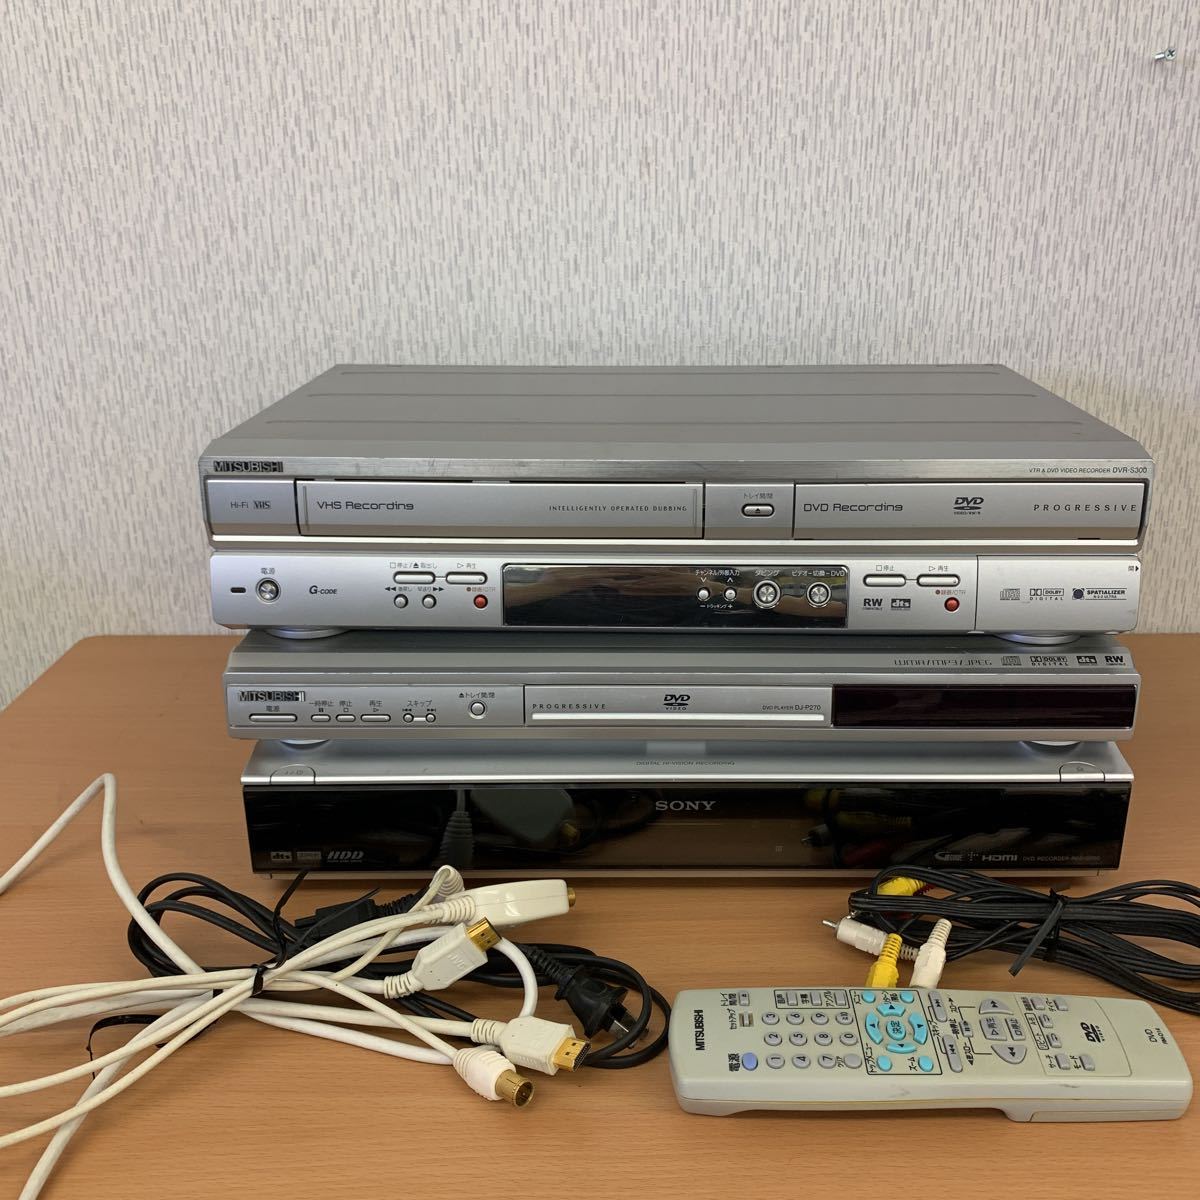 売上高No.1の商品 【美品】MITSUBISHI DVR-S300 VHS一体型DVDレコーダー DVDレコーダー